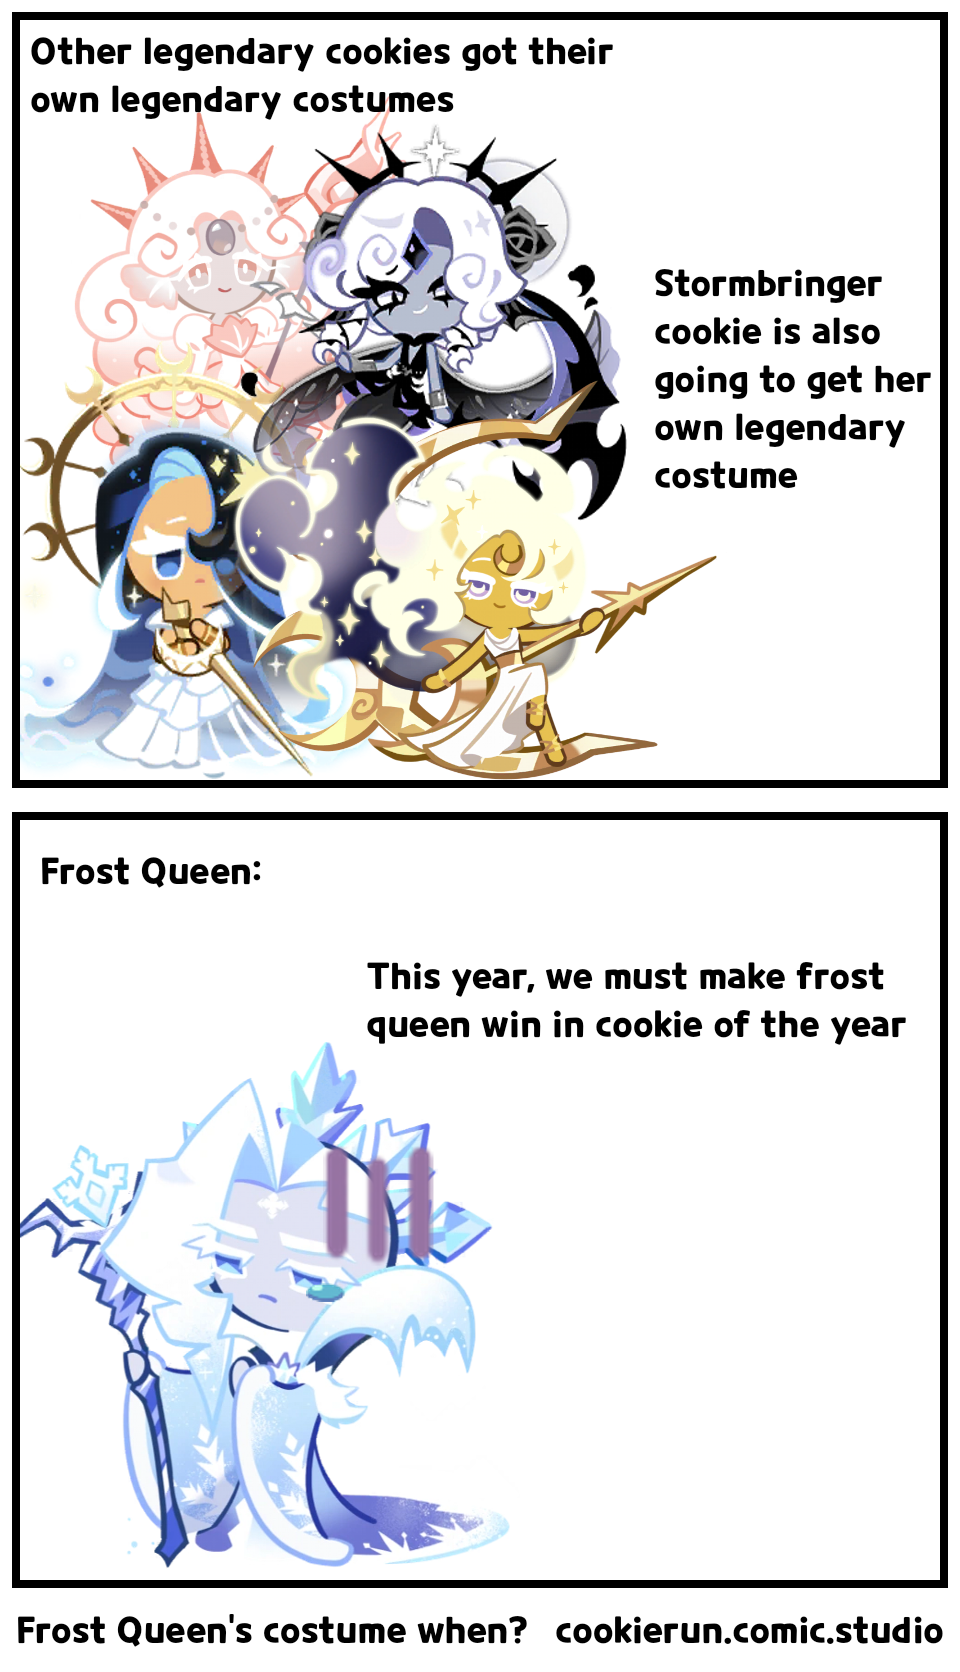 Frost Queen's costume when?